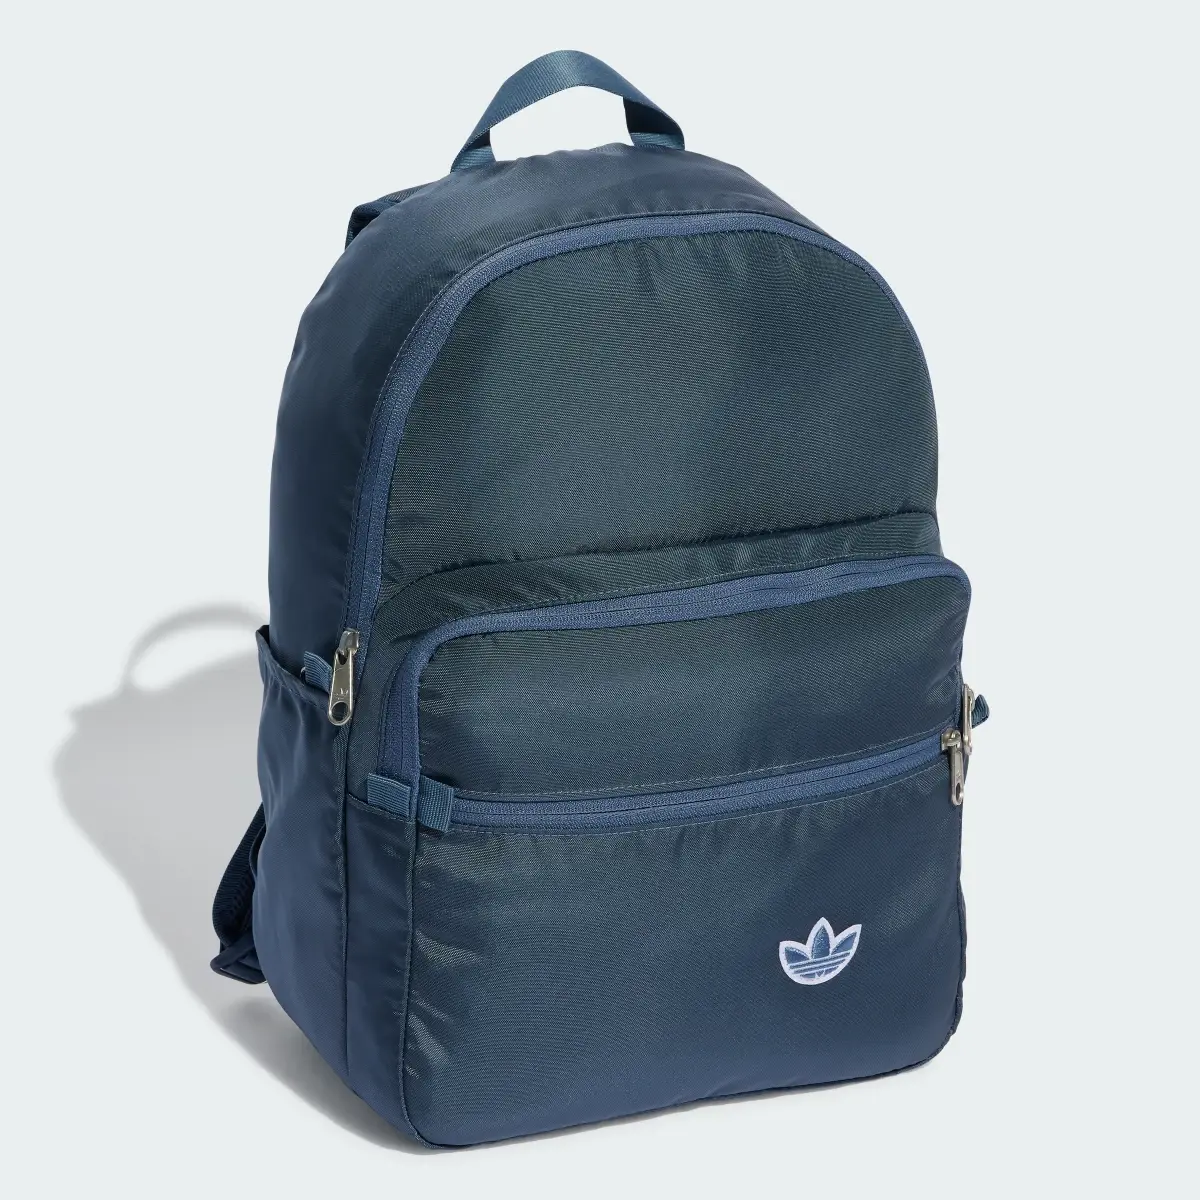 Adidas Premium Essentials Backpack. 2